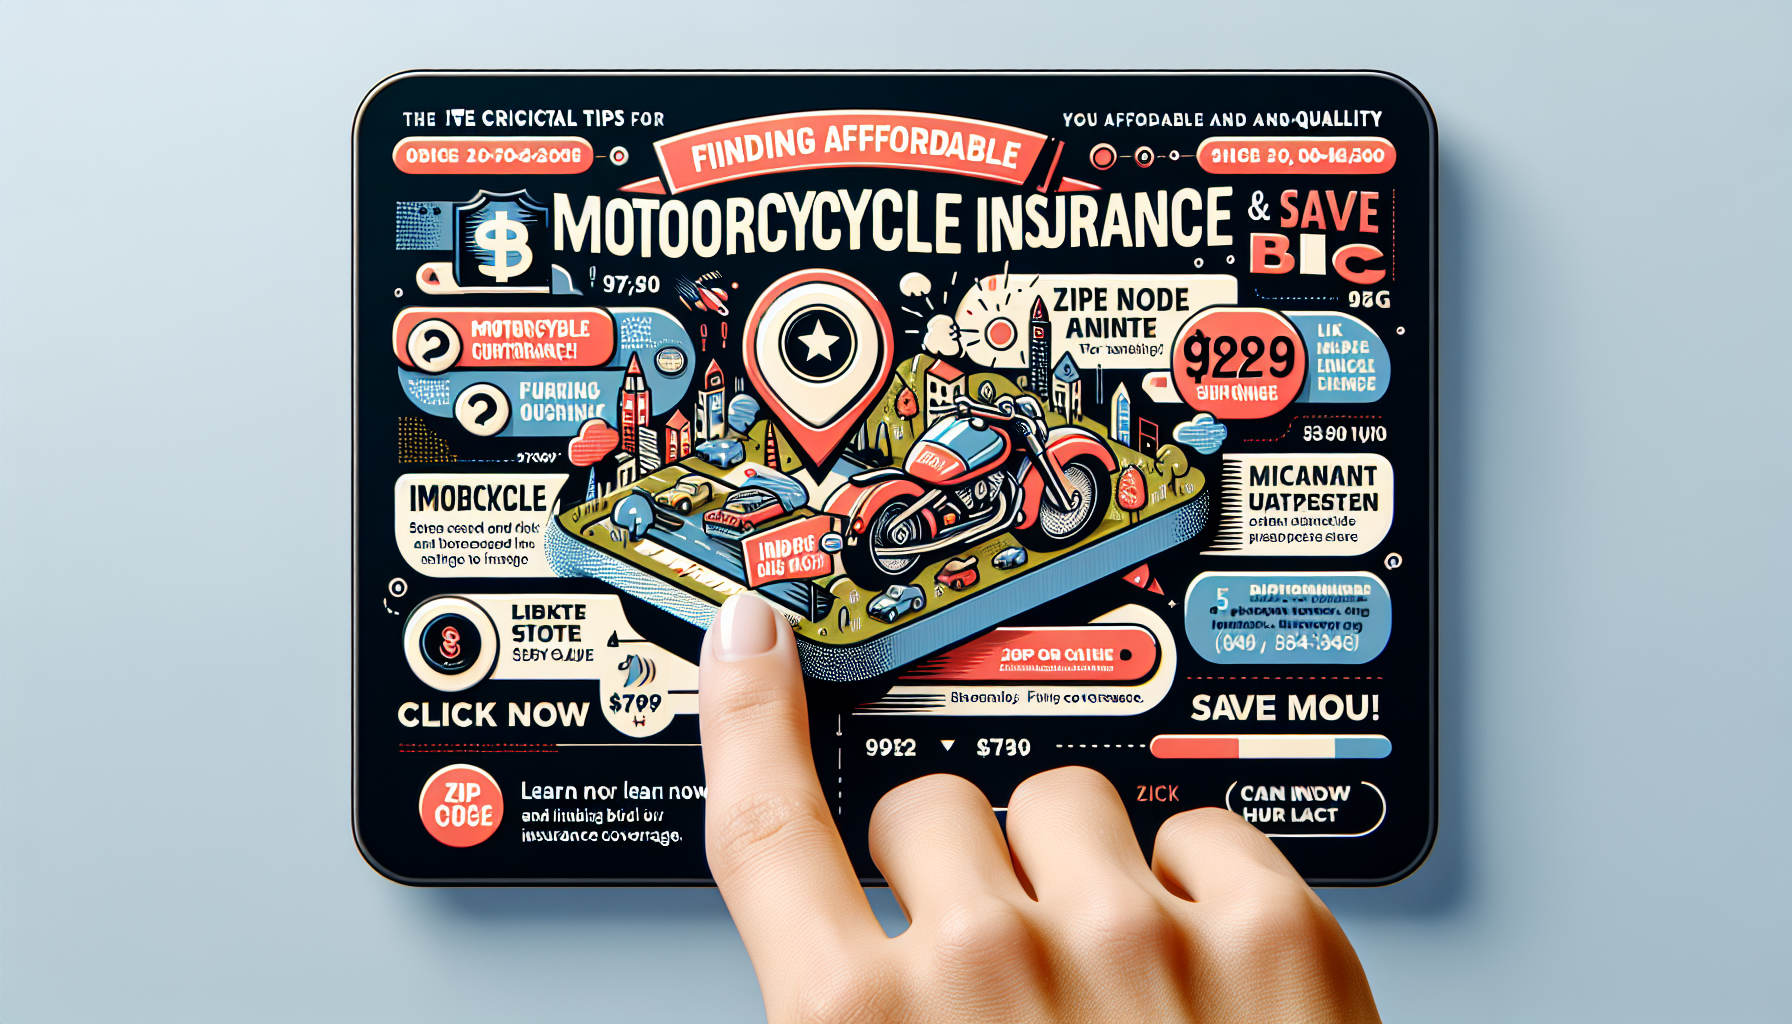 découvrez les critères à prendre en compte pour choisir une assurance moto pas chère à 97420 avec notre comparateur d'assurance moto 97420.